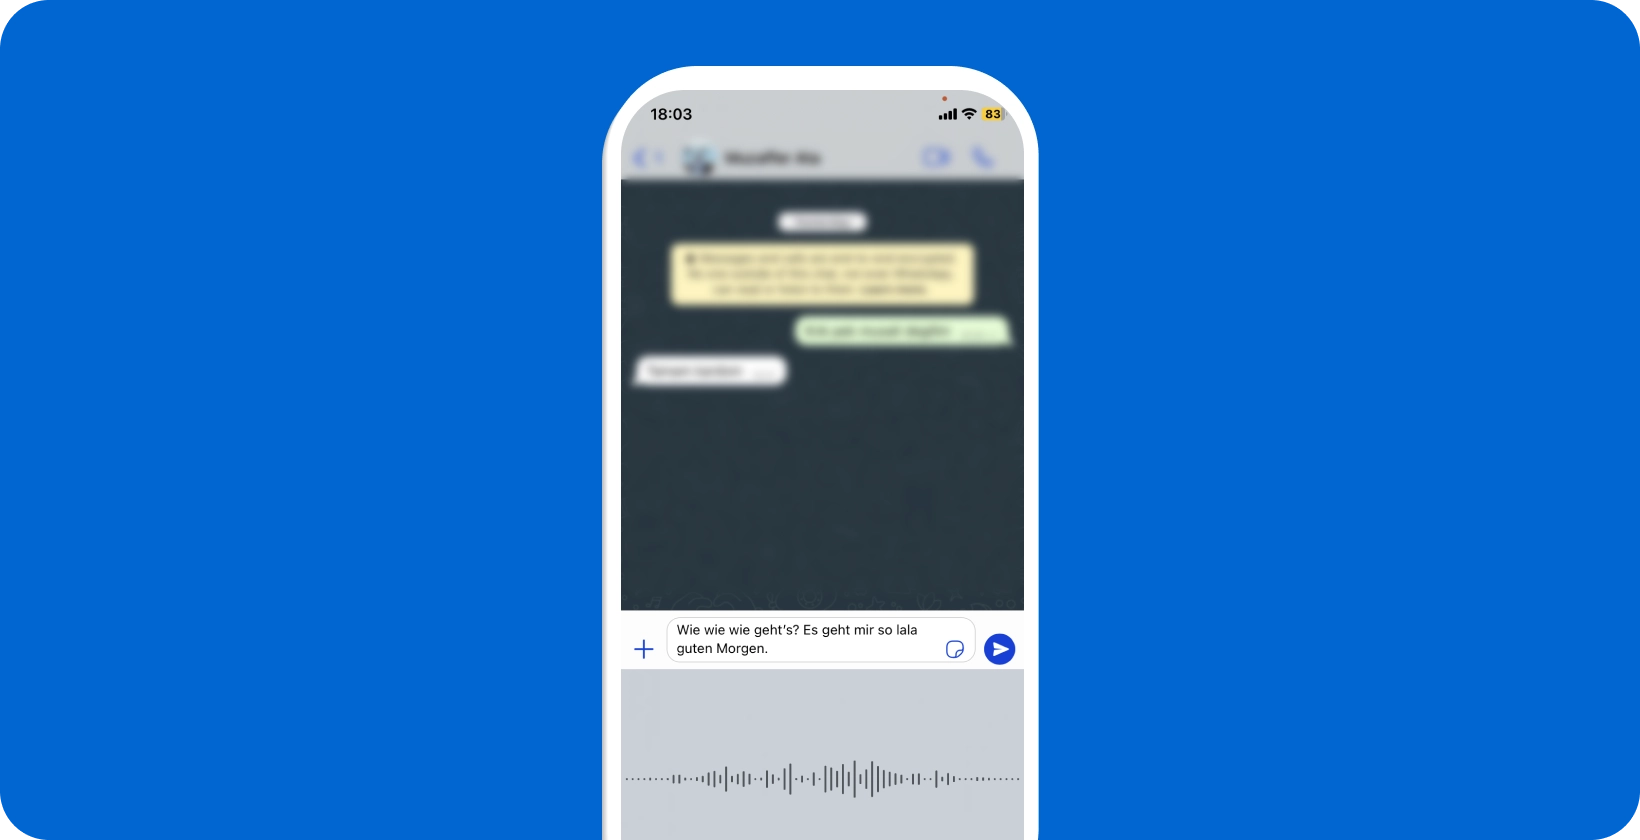 Smartphone care afișează dictarea vocală WhatsApp în curs de desfășurare, prezentând conversia vorbirii în text în timp real.